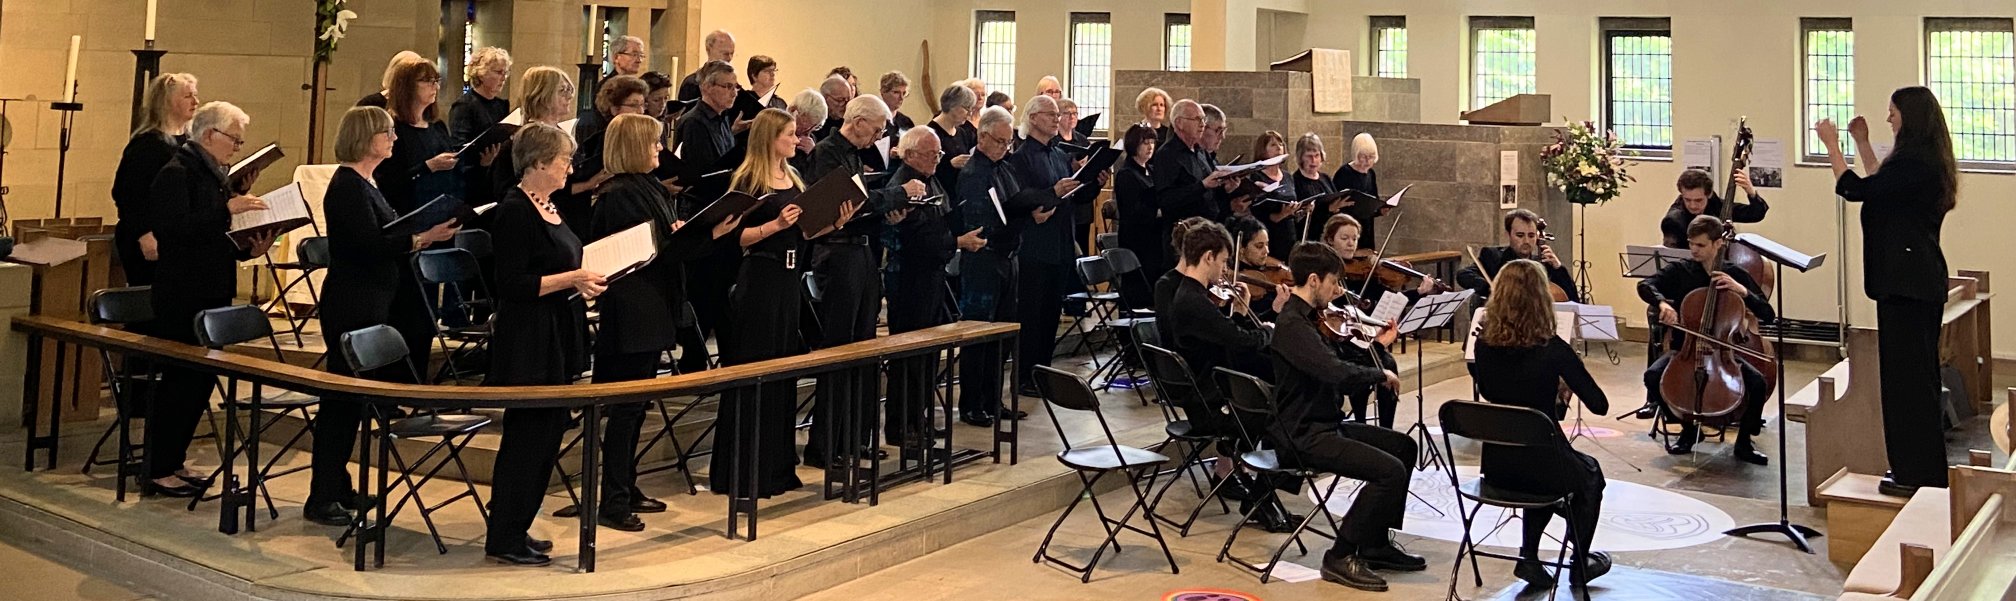 Britten Gounod at All Saints, Ecclesall